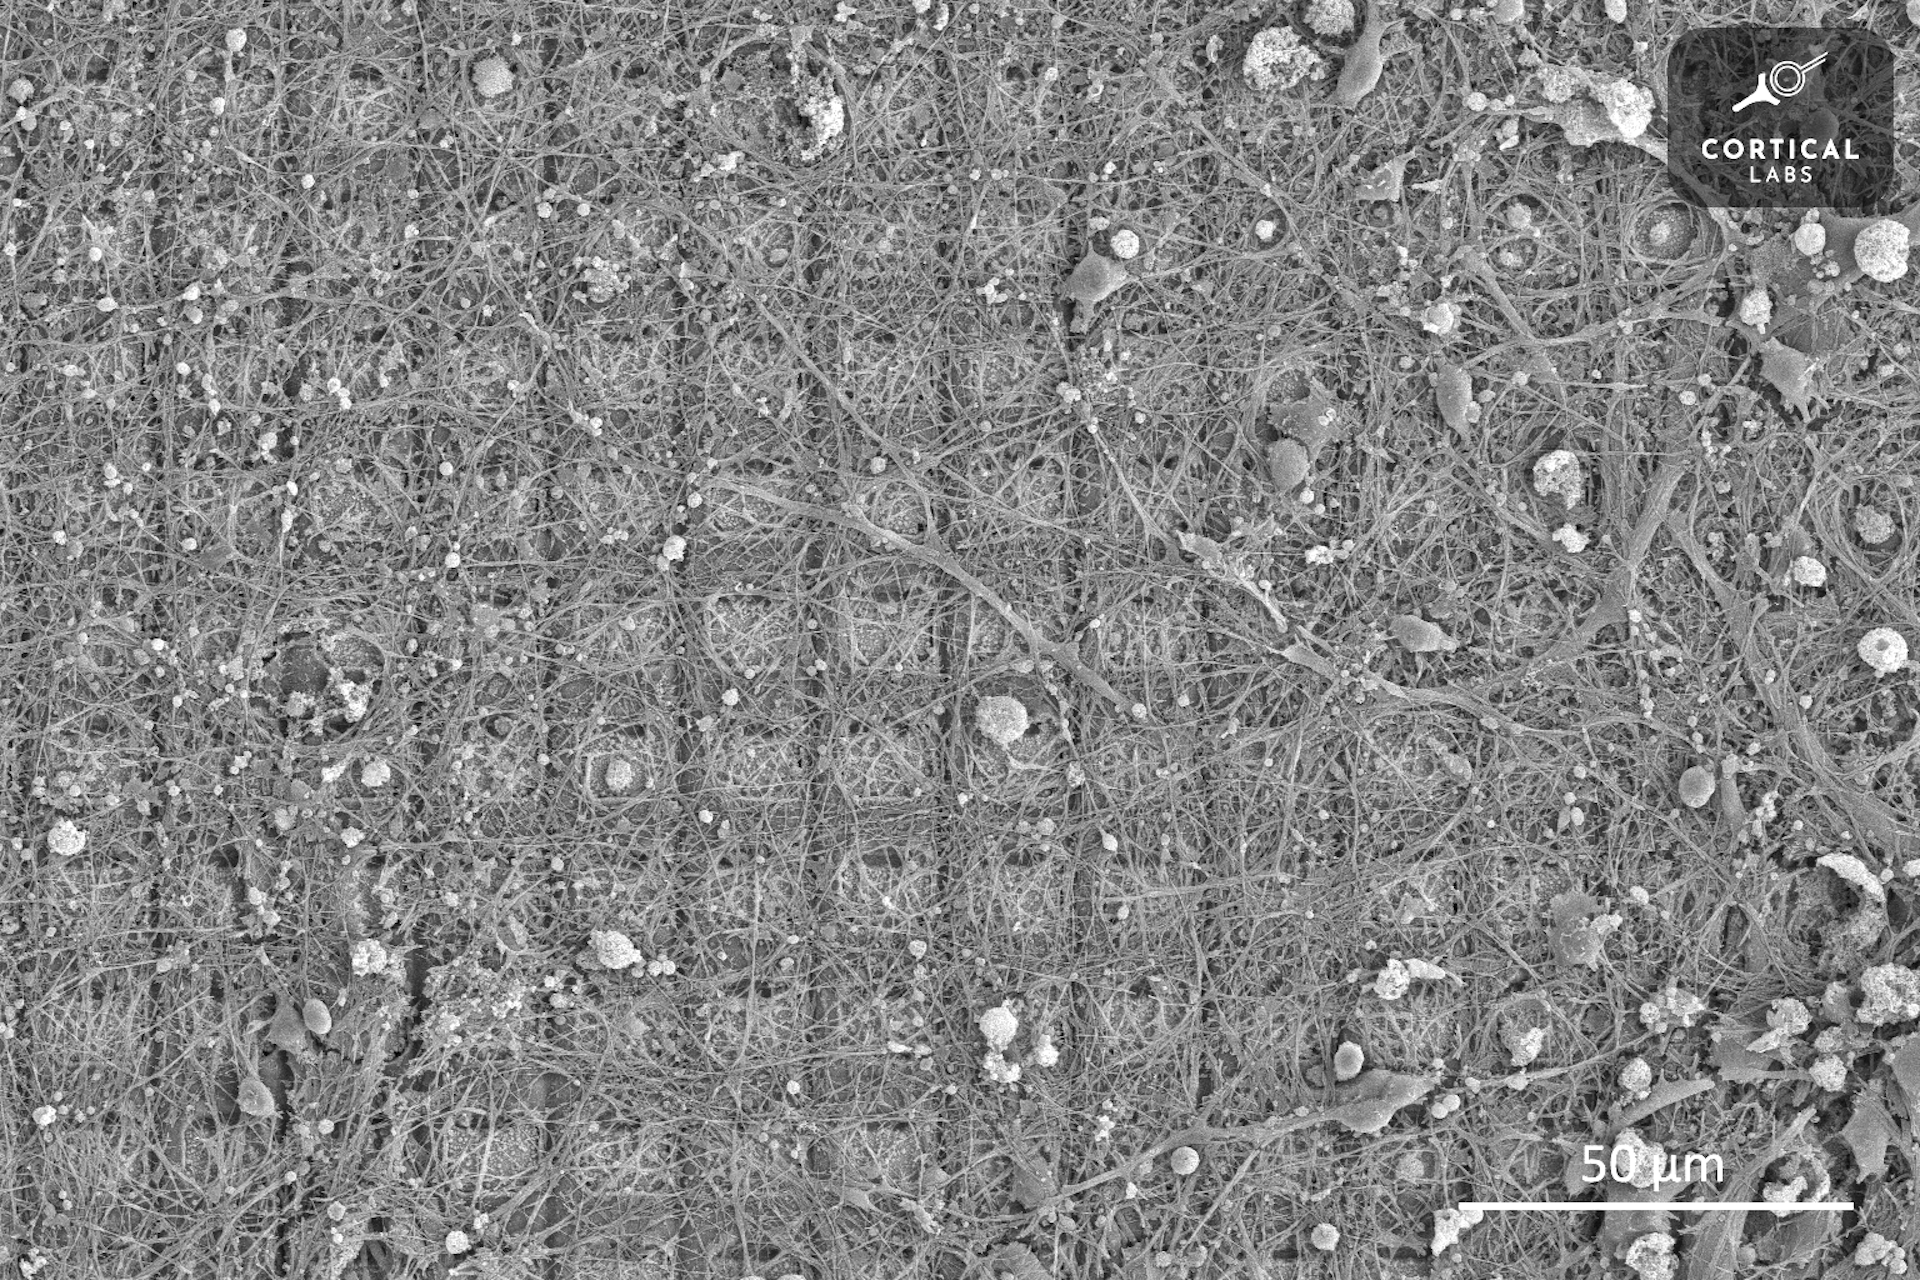 Un'immagine al microscopio mostra una griglia di quadrati ricoperta da una crescita irregolare di neuroni simili a filamenti.